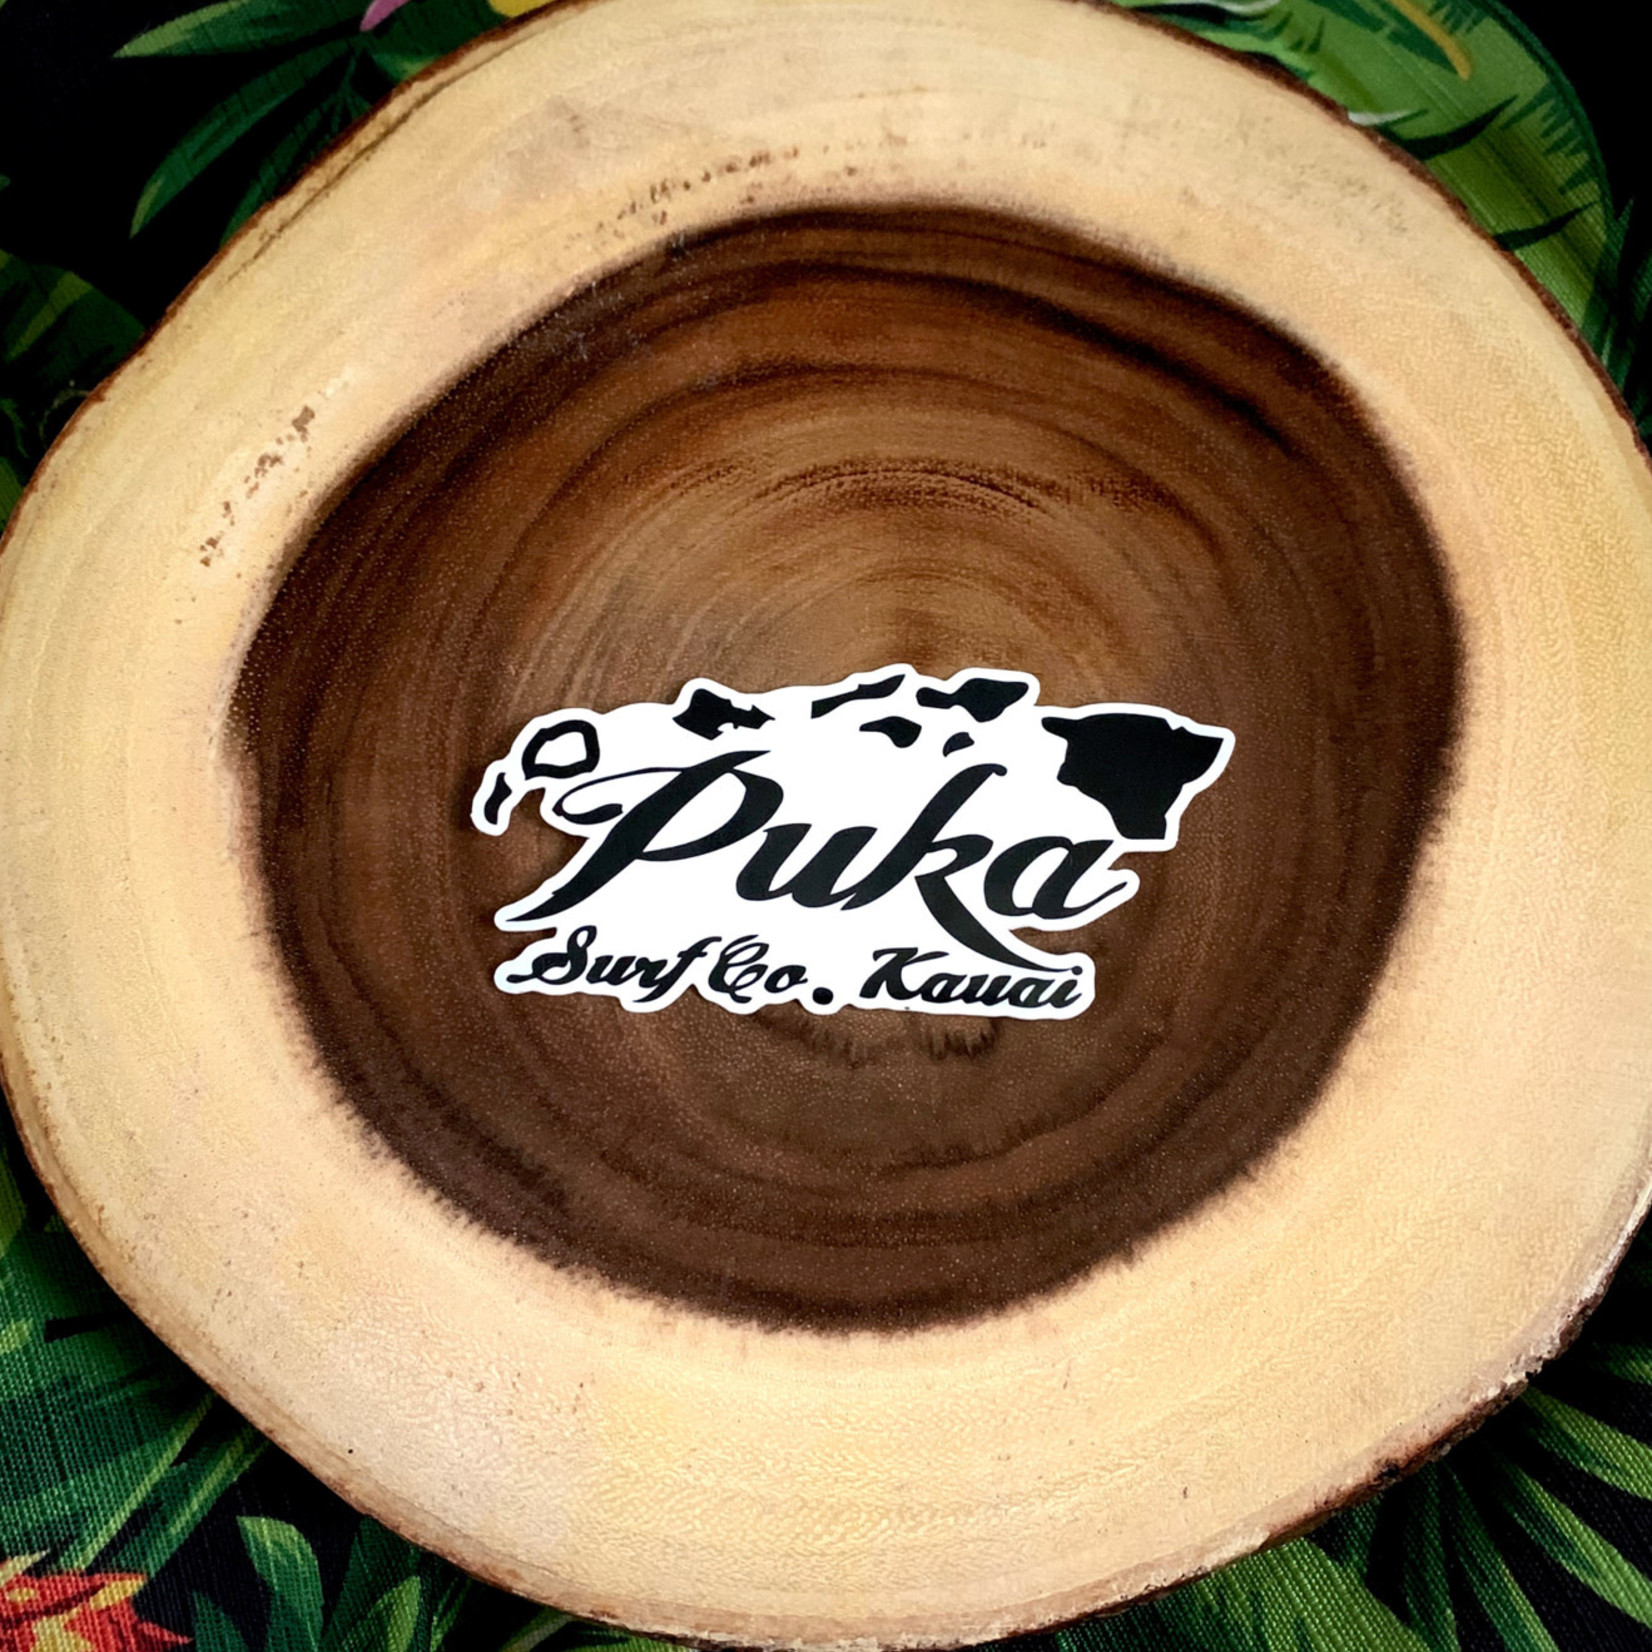 Puka Surf Co. Hawaii Puka Surf Co. Kauai Sticker 4” X 2”